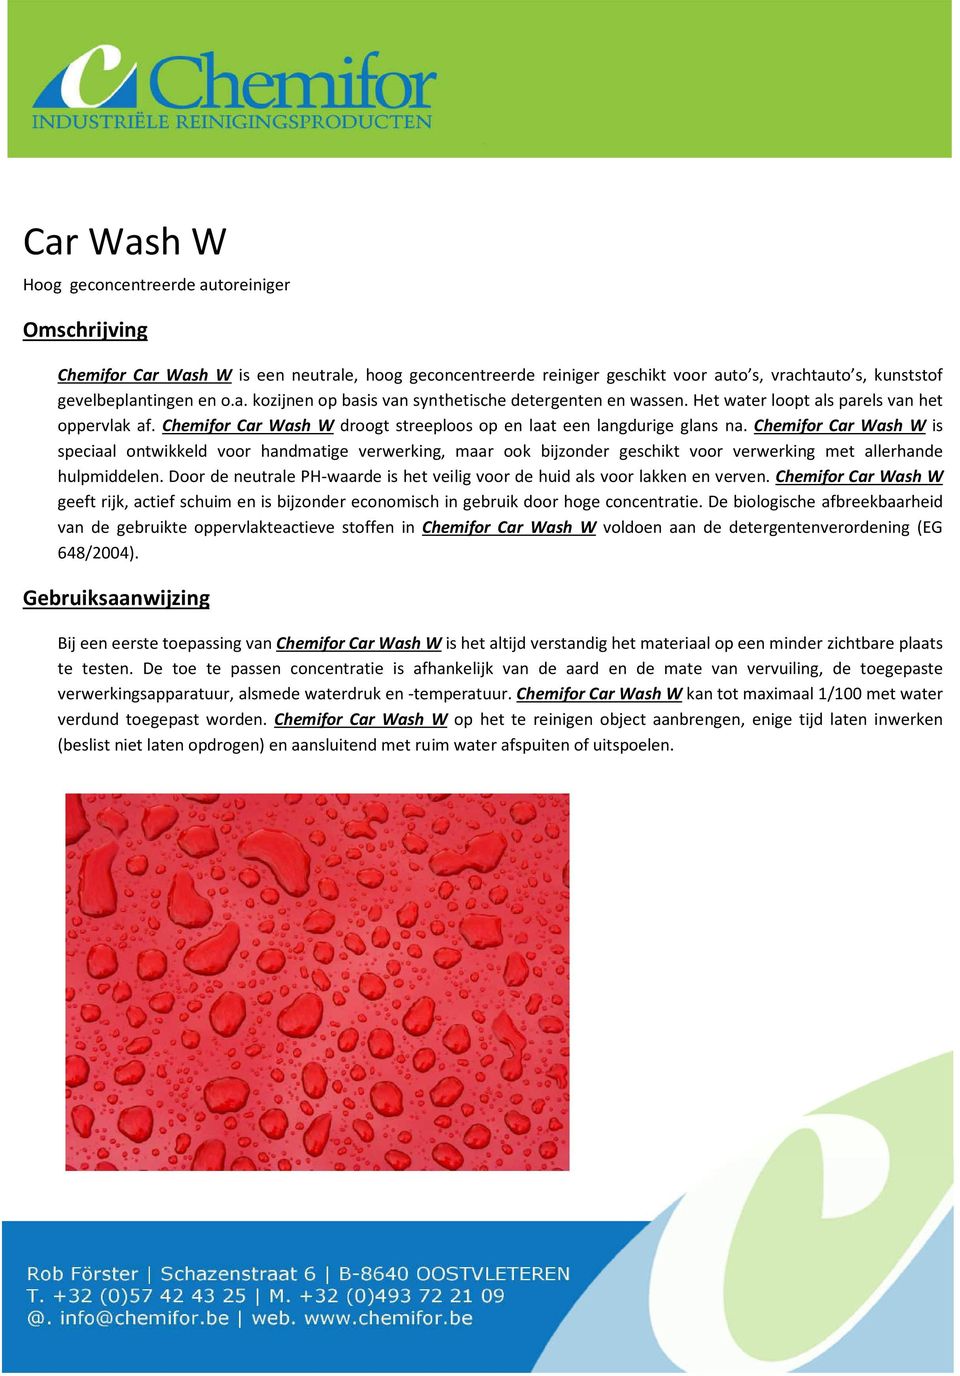 Chemifor Car Wash W is speciaal ontwikkeld voor handmatige verwerking, maar ook bijzonder geschikt voor verwerking met allerhande hulpmiddelen.